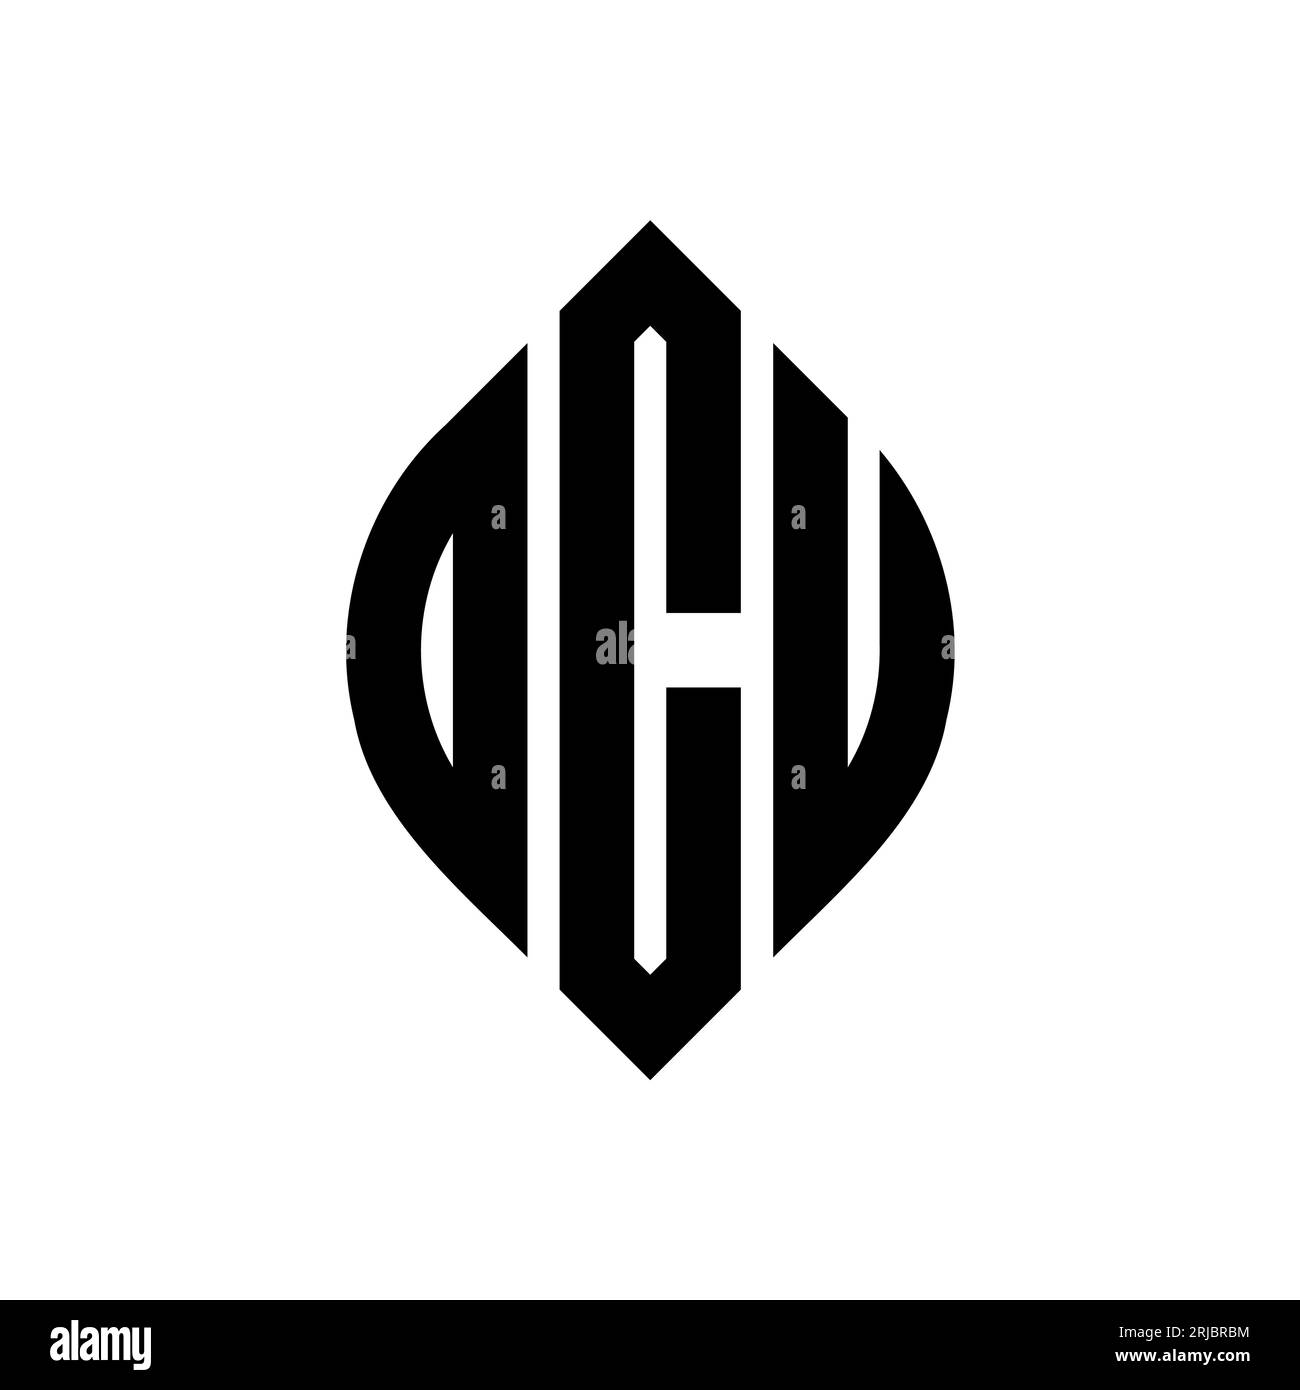 OCU-Logodesign mit kreisförmigem Buchstaben und Ellipsenform. OCU-Ellipsenbuchstaben im typografischen Stil. Die drei Initialen bilden ein kreisförmiges Logo. OCU-CI Stock Vektor